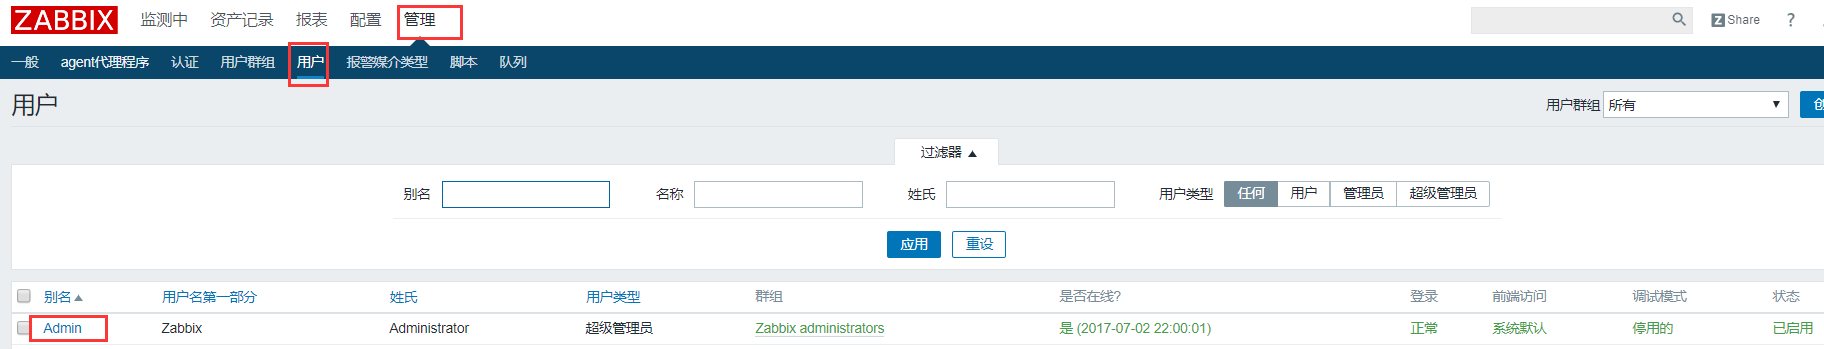 使用Zabbix服务端本地邮箱账号发送报警邮件及指定报警邮件操作记录第3张